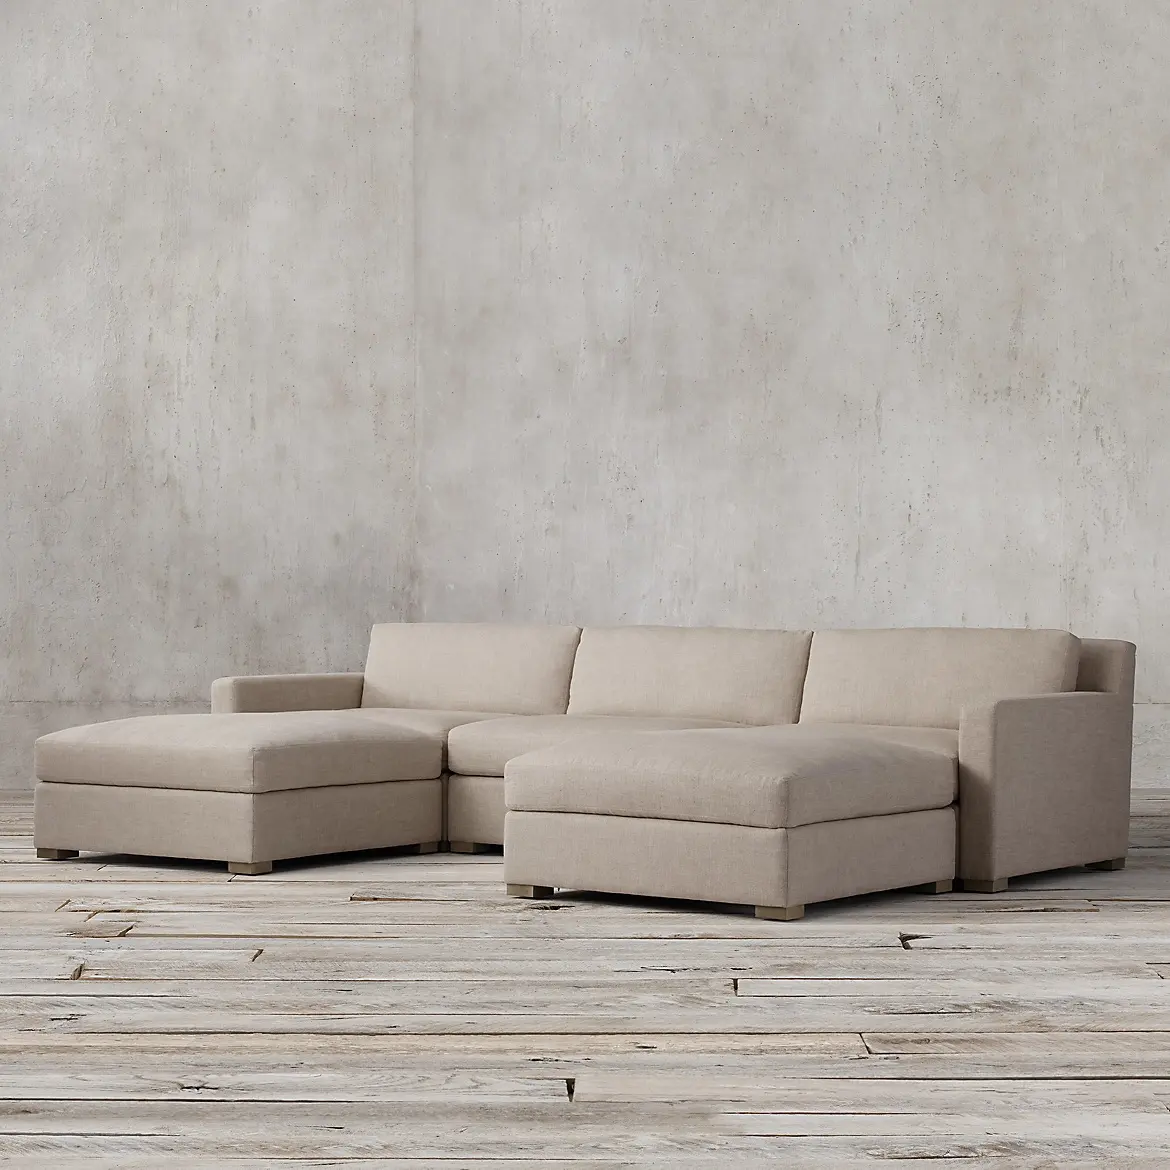 Di alta qualità moderno design semplice tessuto in stile americano a forma di l divano soggiorno divano 7 posti divano componibile set mobili